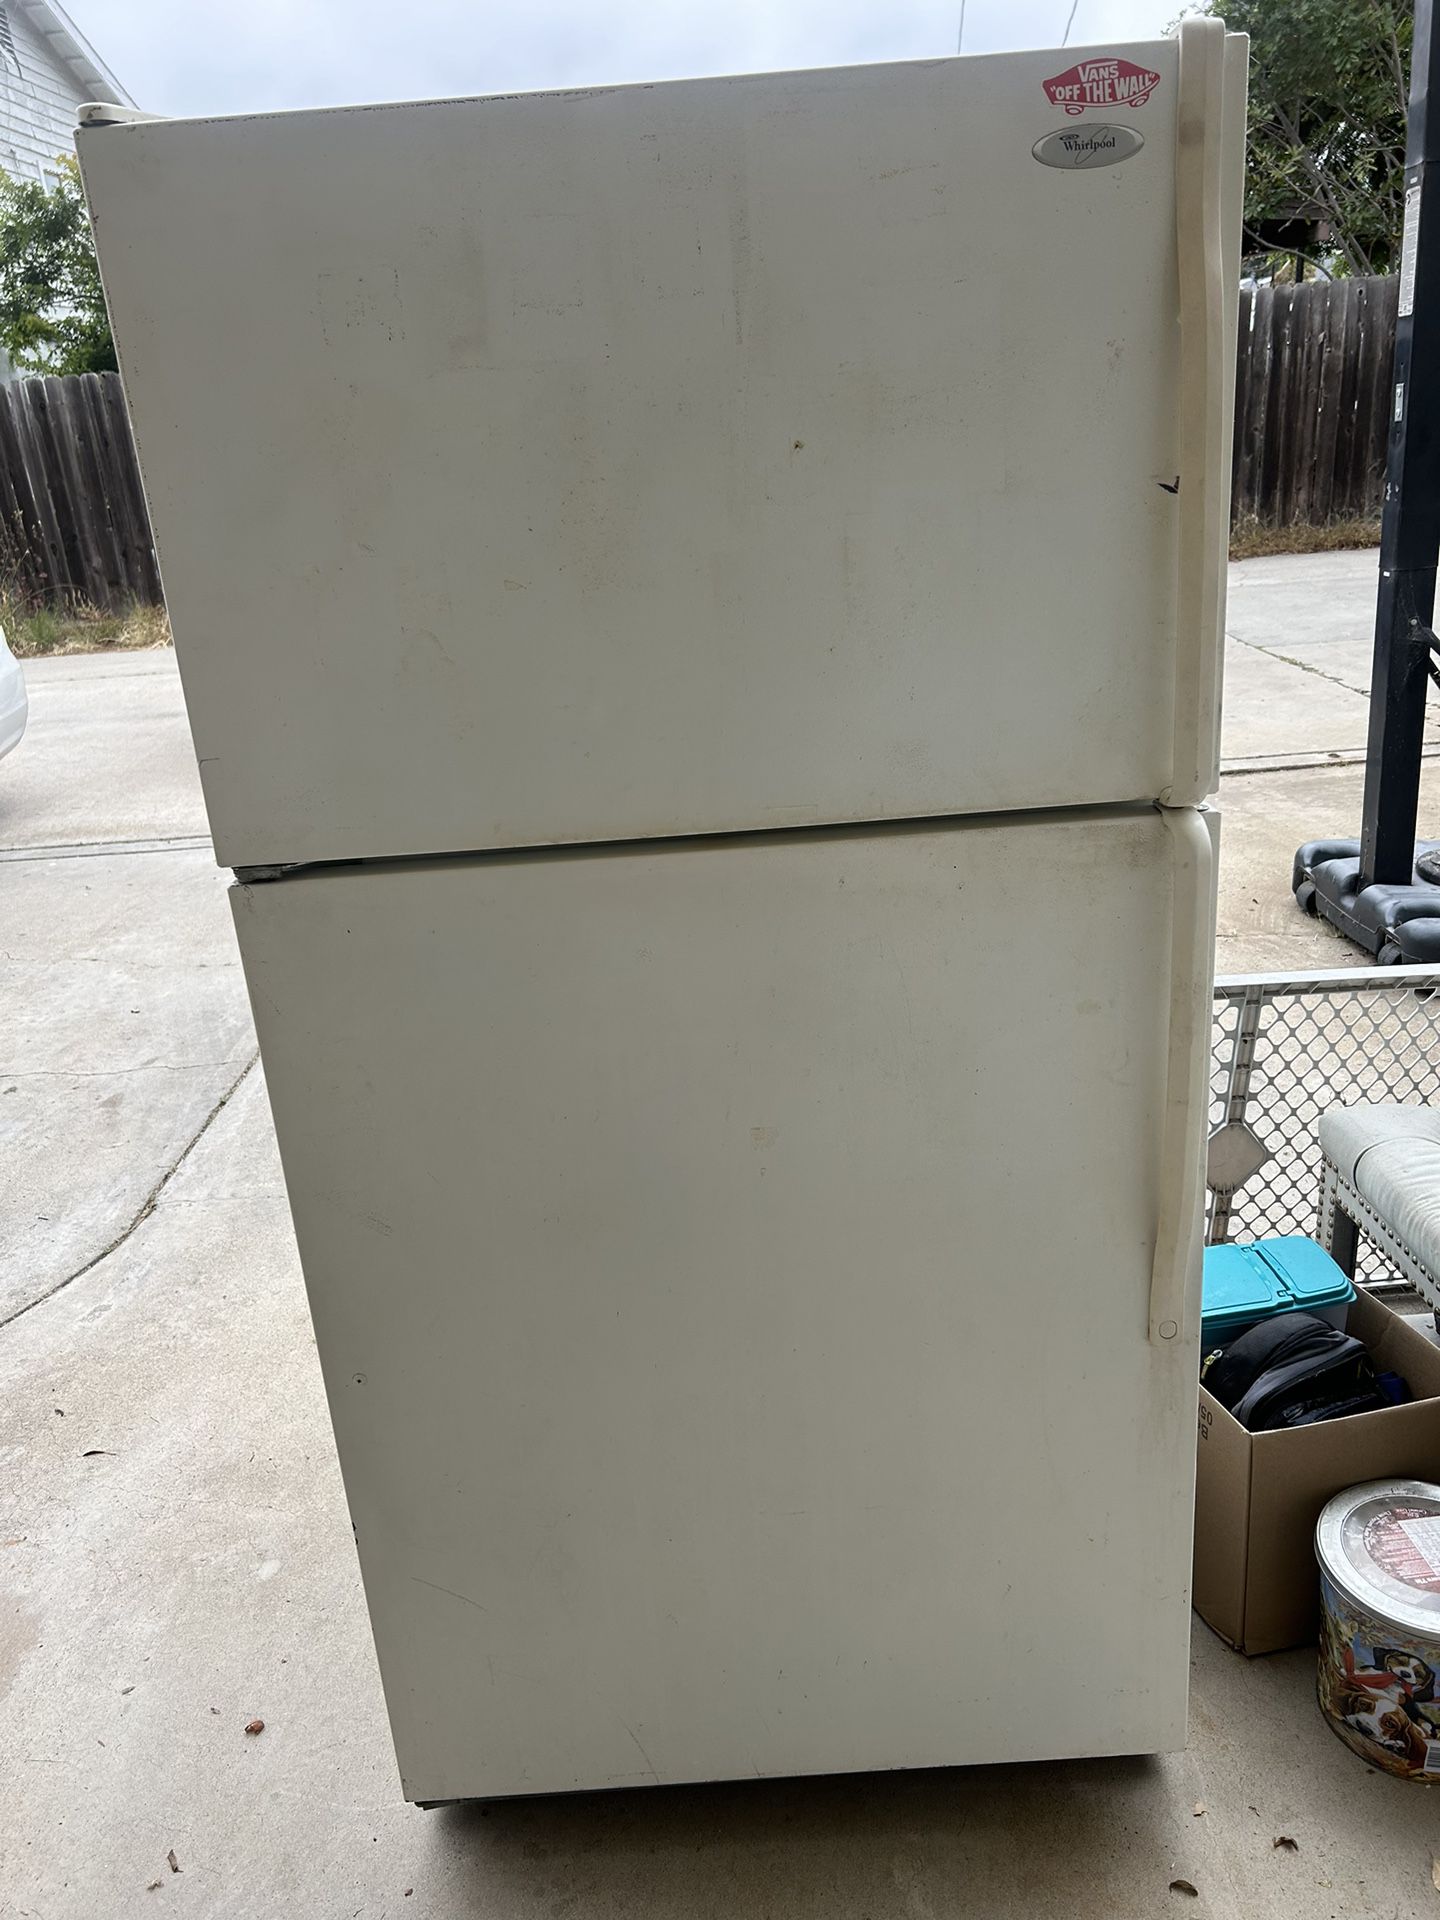 Free Whirlpool Refrigerator